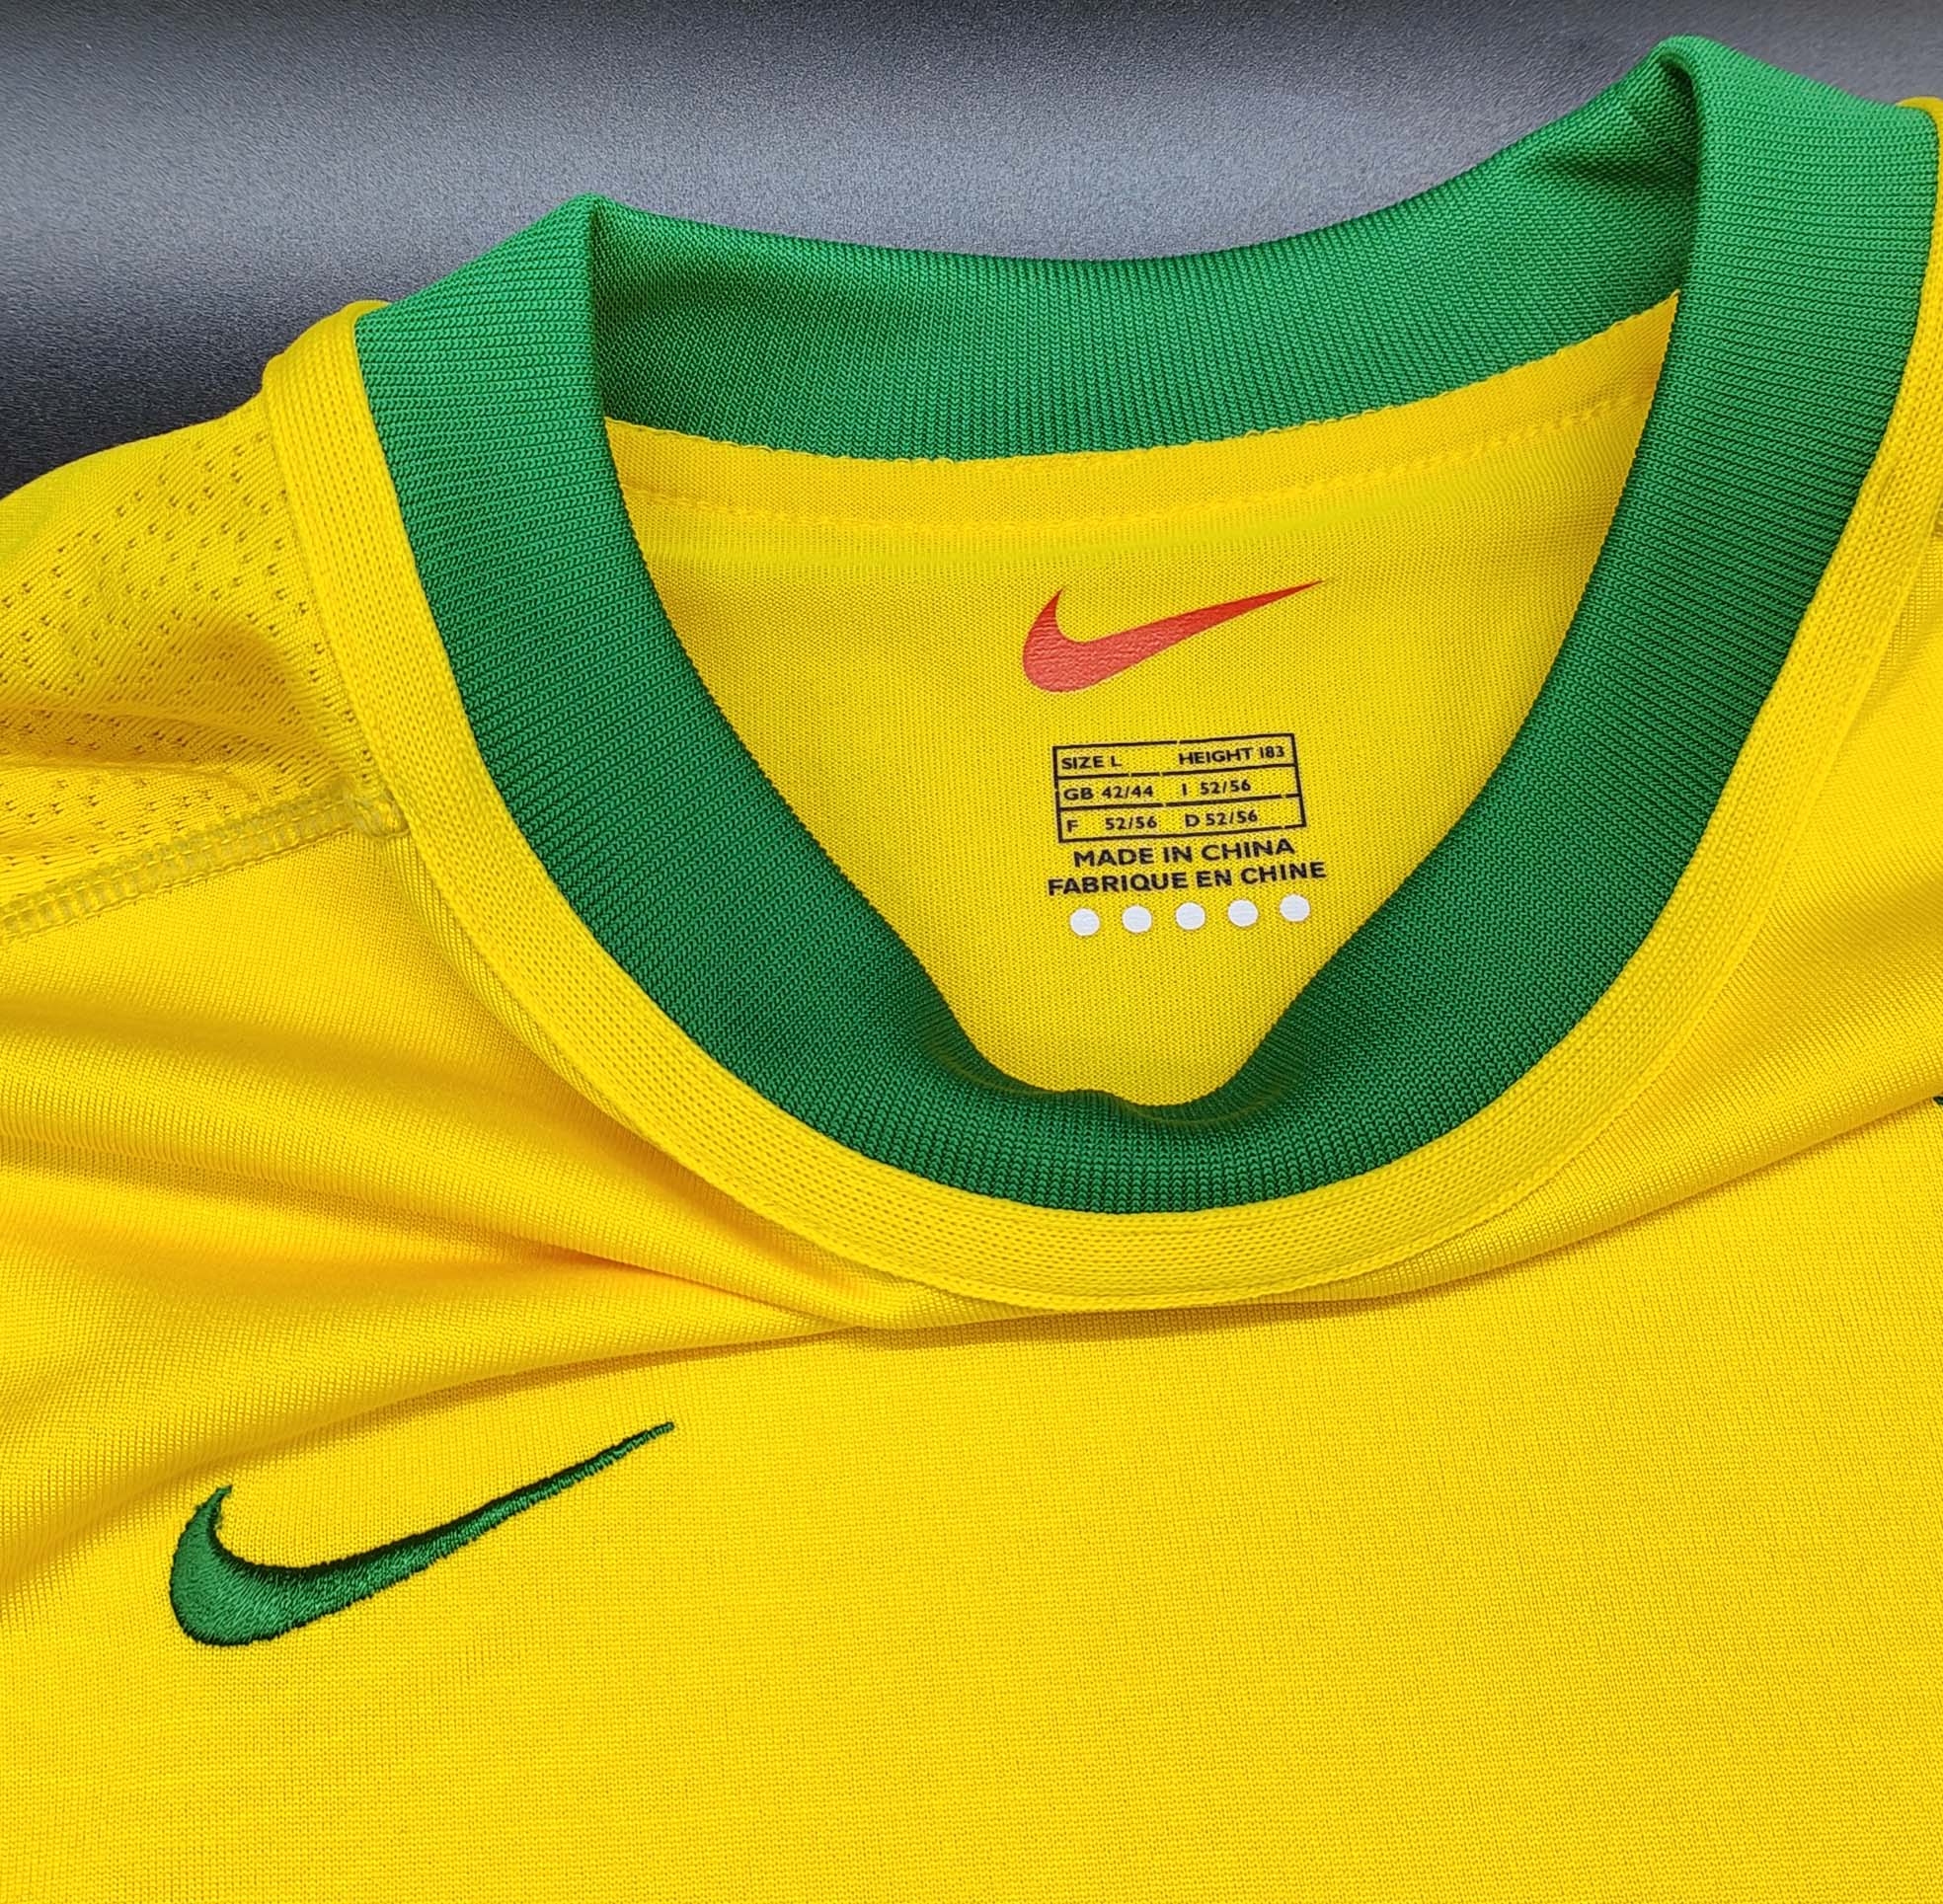 Brasile 2000 maglia Nike home #9 Ronaldo